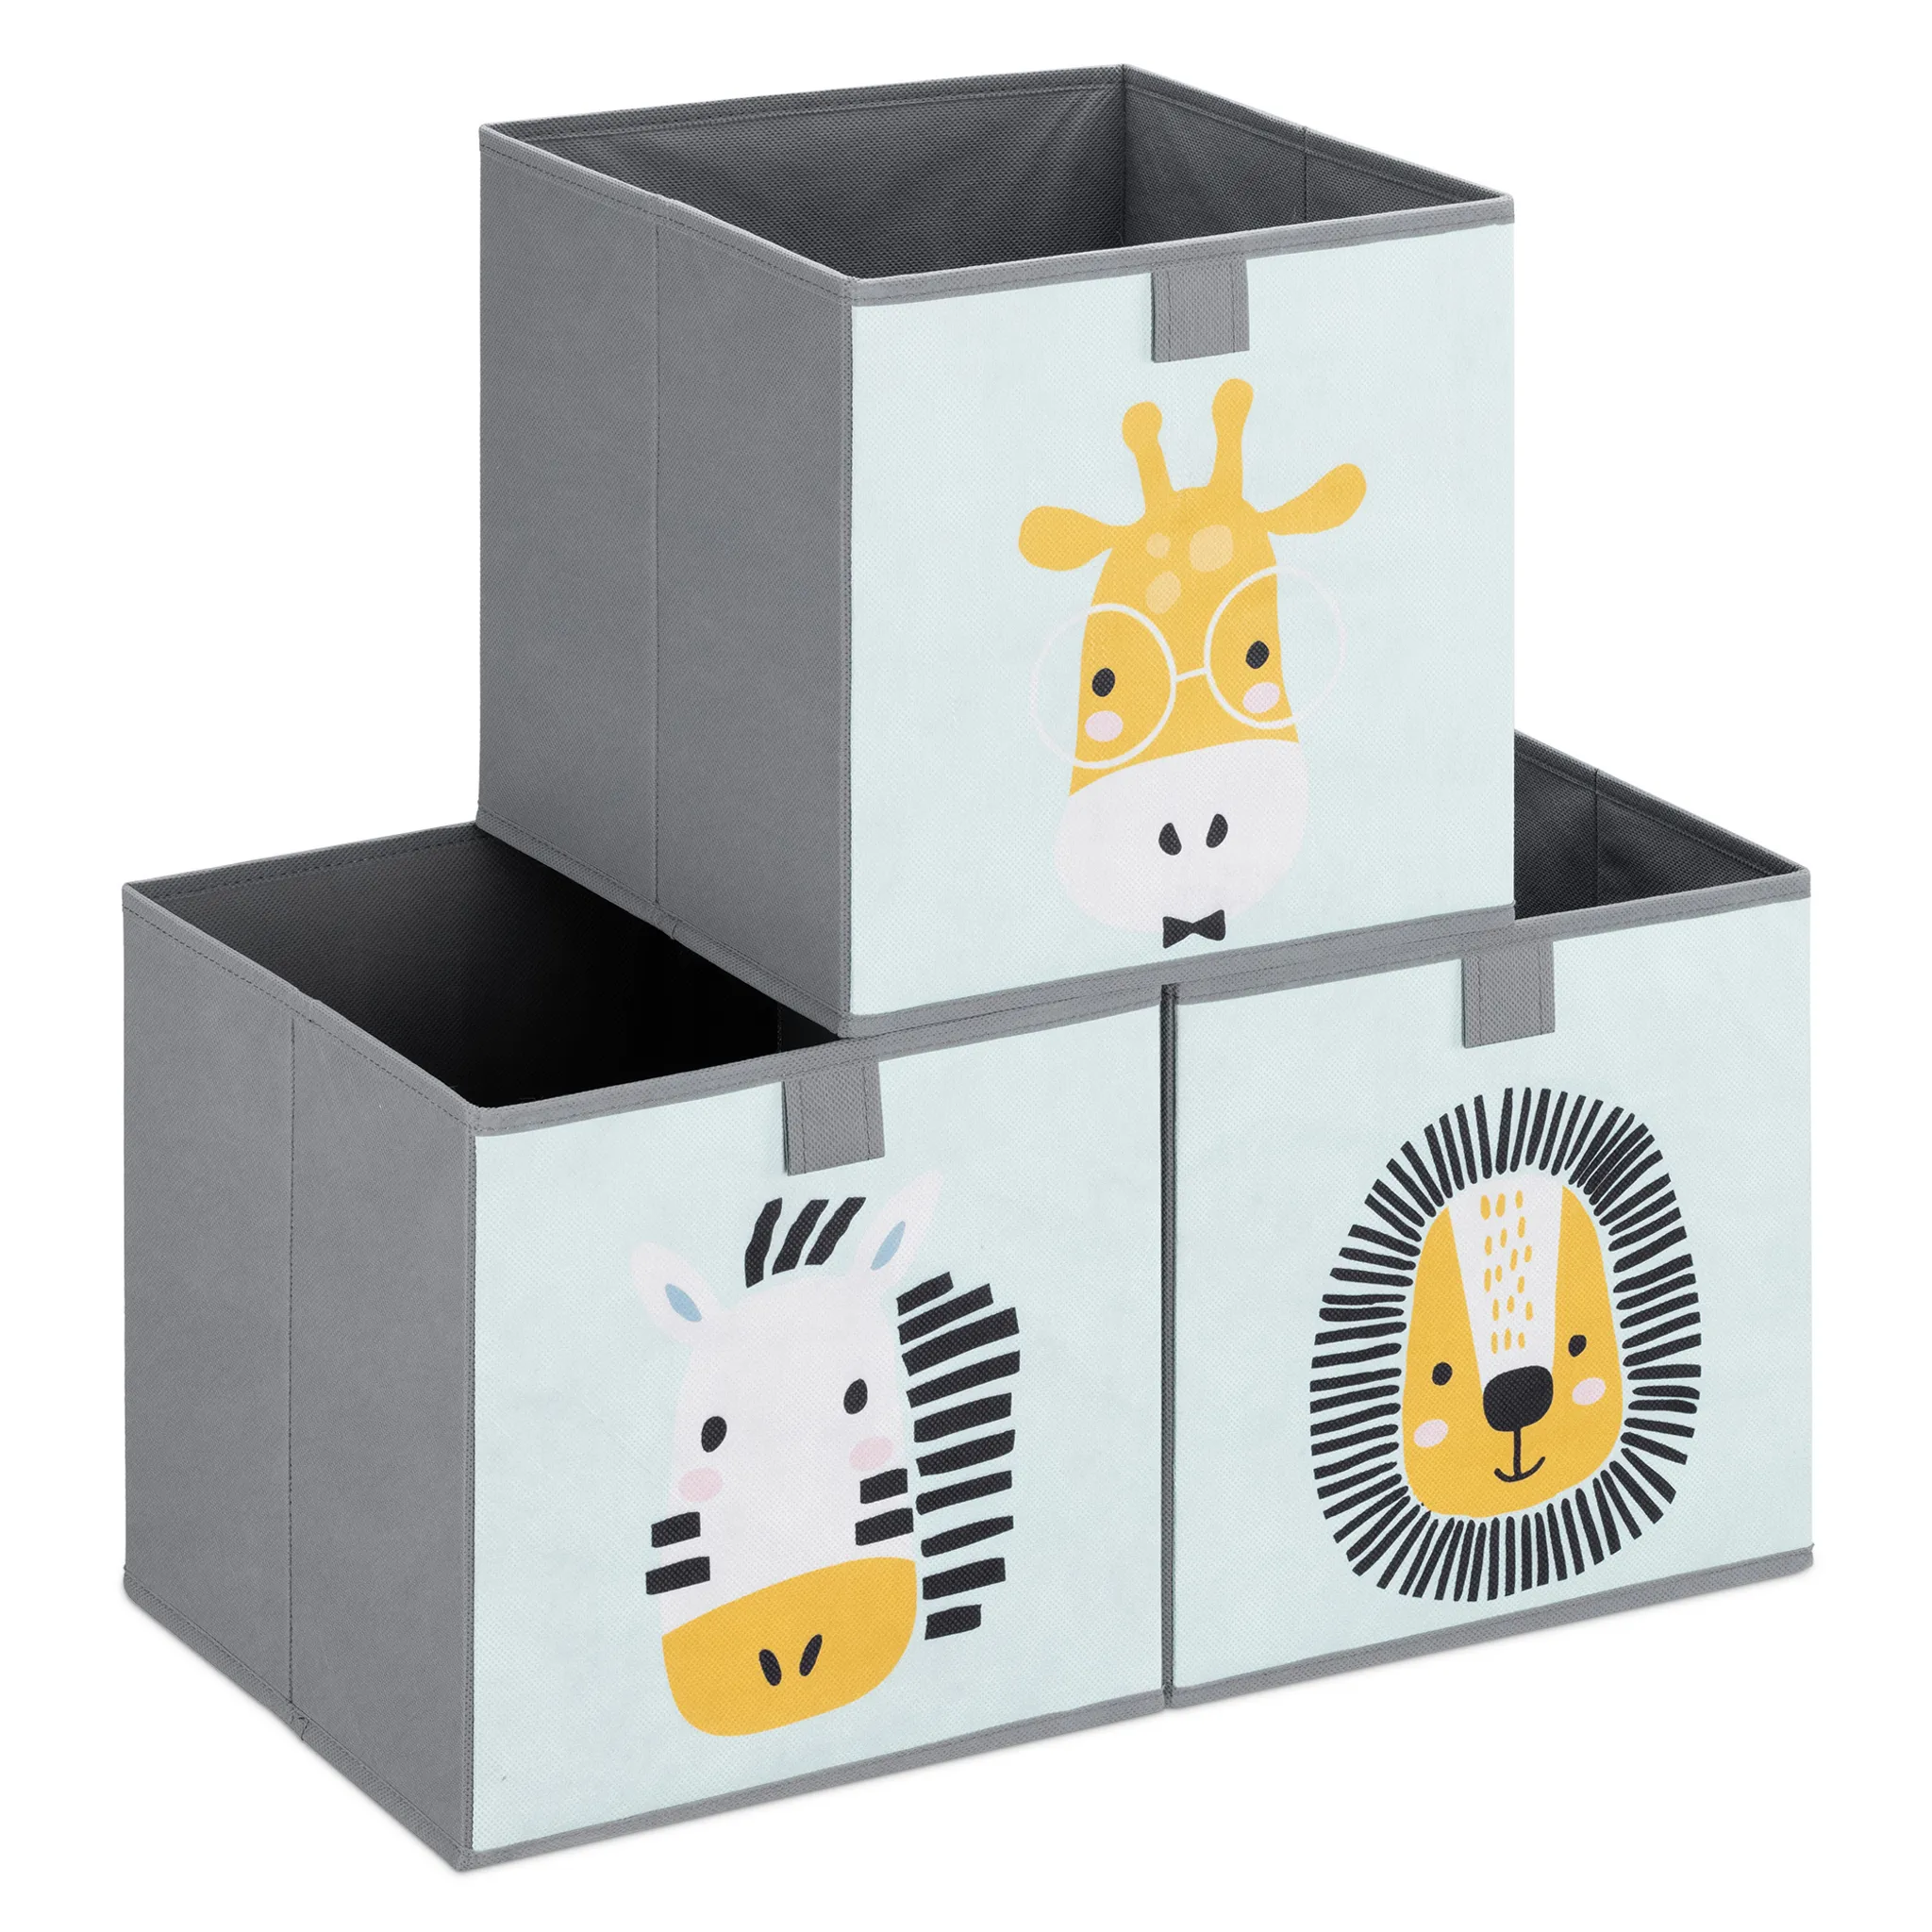 Faltbox - Aufbewahrungsboxen - Aufbewahren / Sortieren - Haushalt & Wohnen